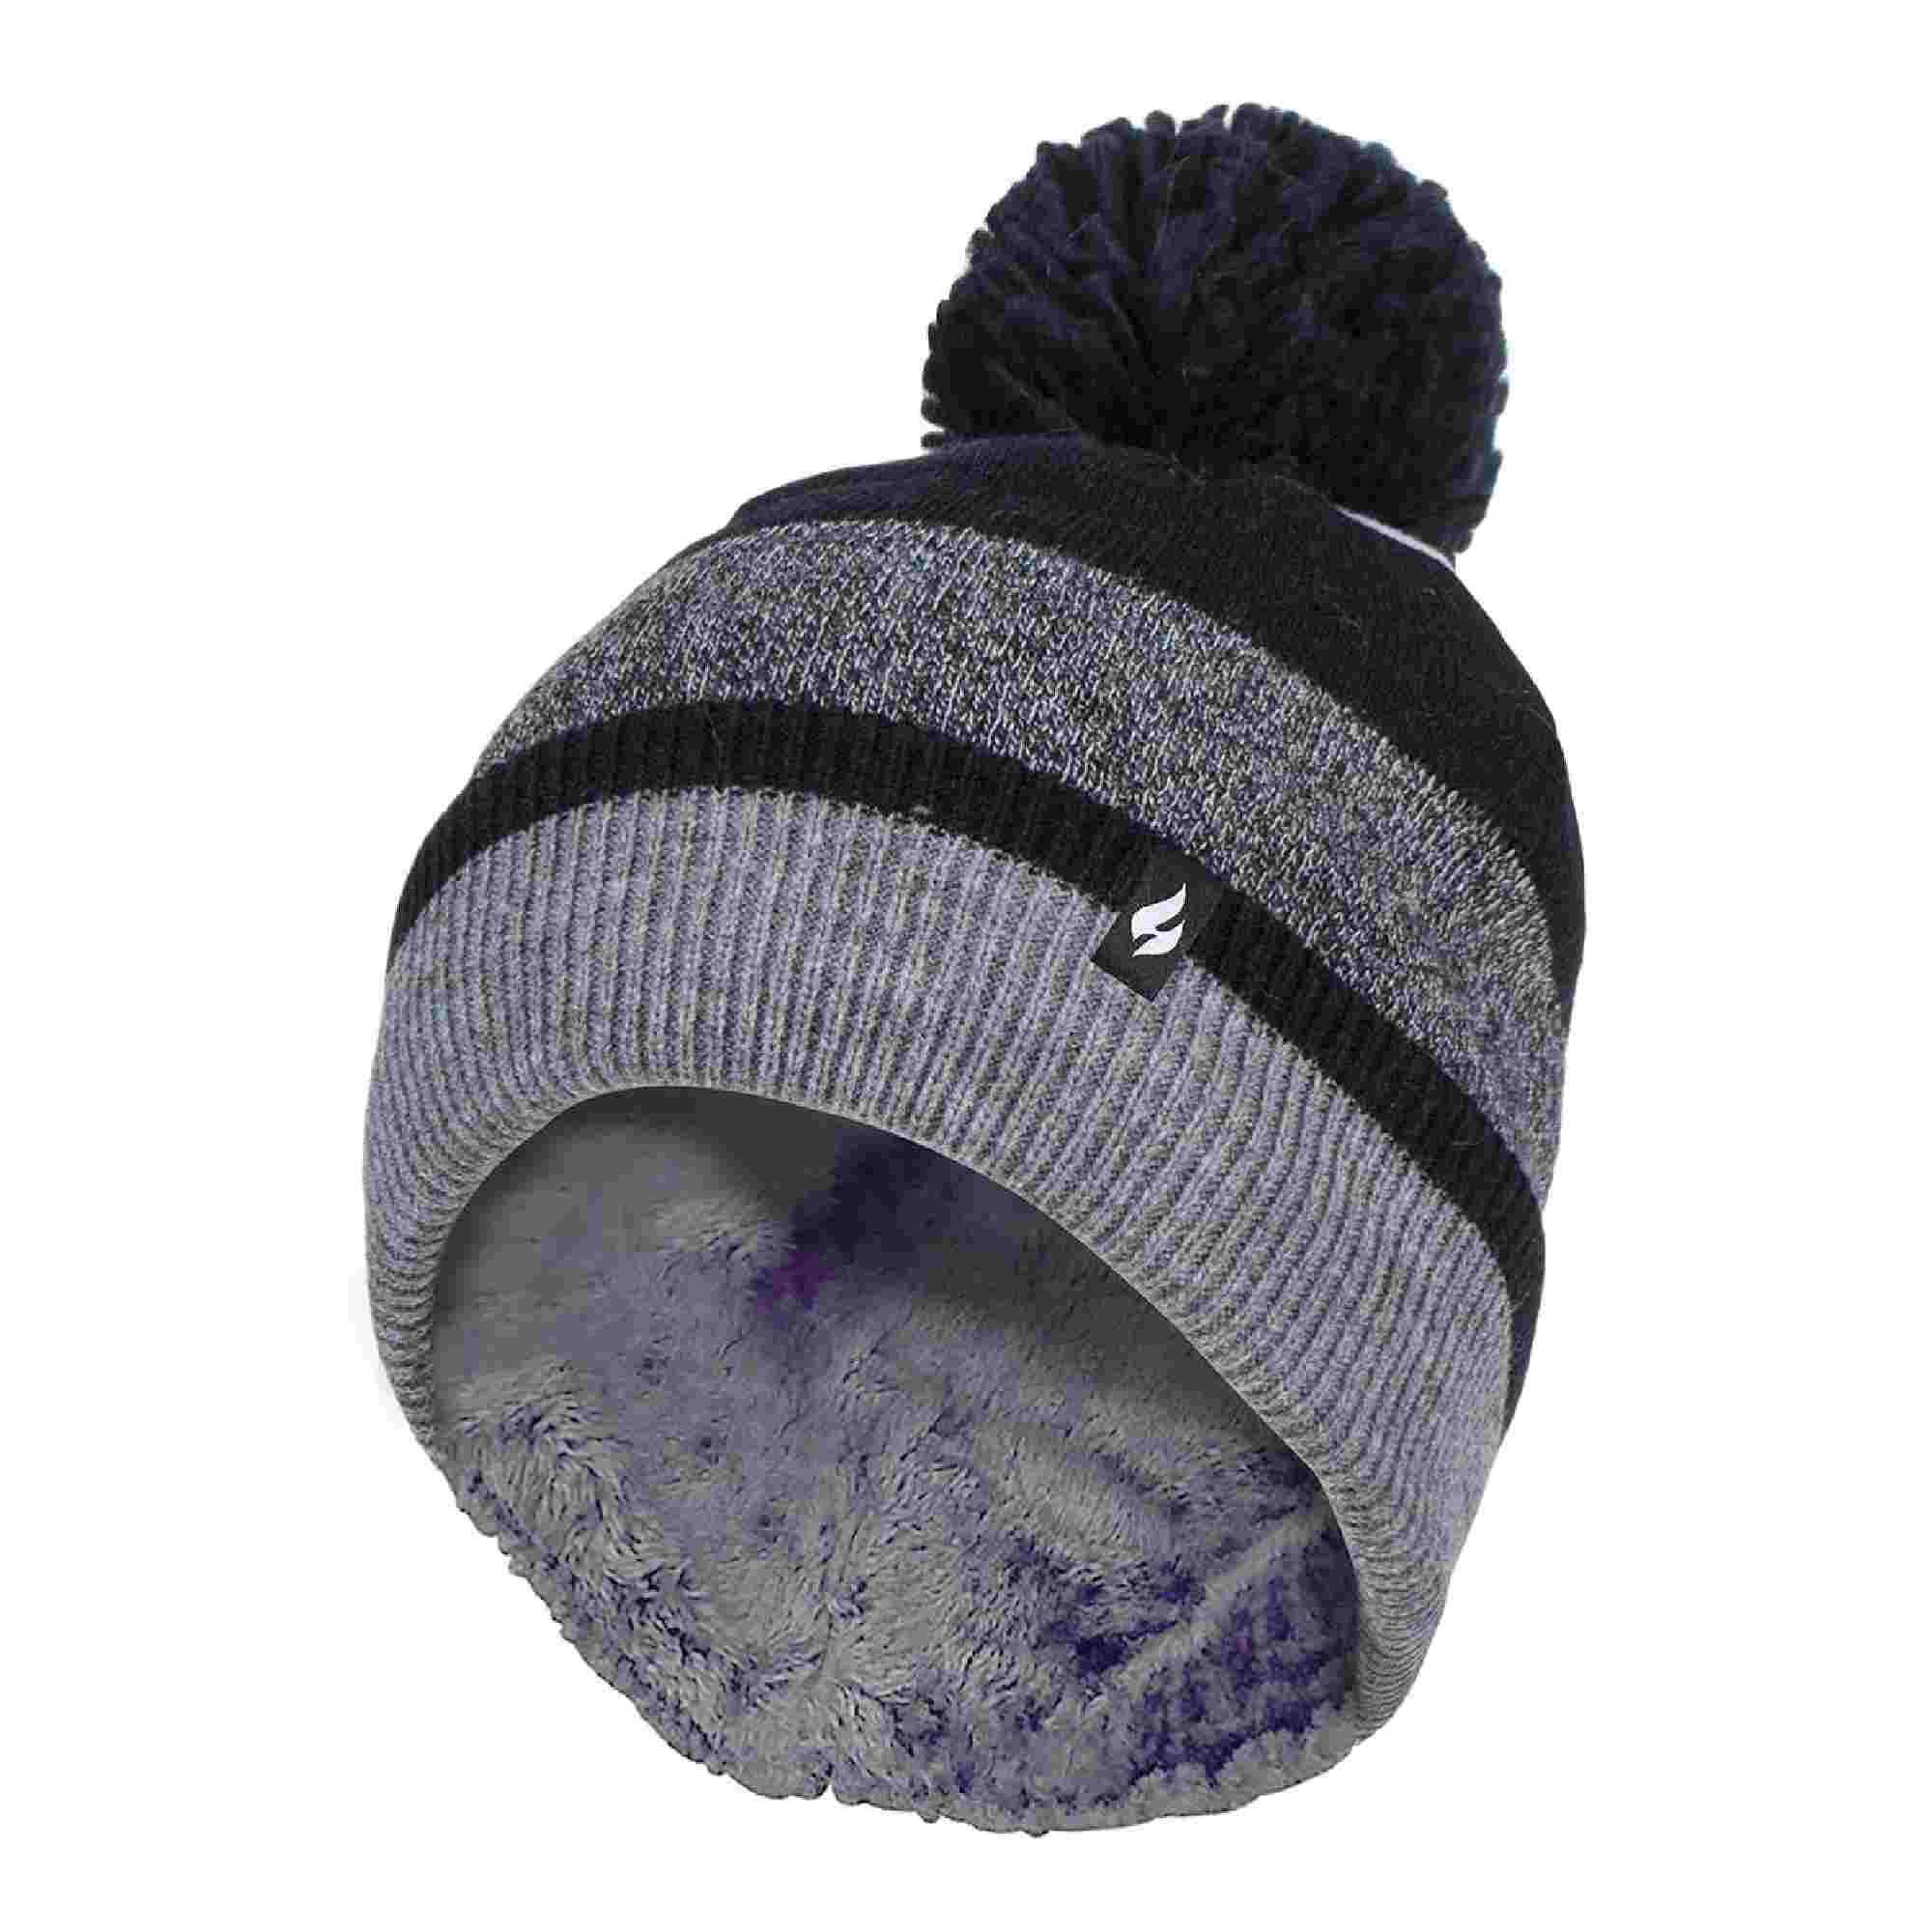 Ladies Warm Knit Fleece Lined Winter Warm Hat with Pom Pom 1/4